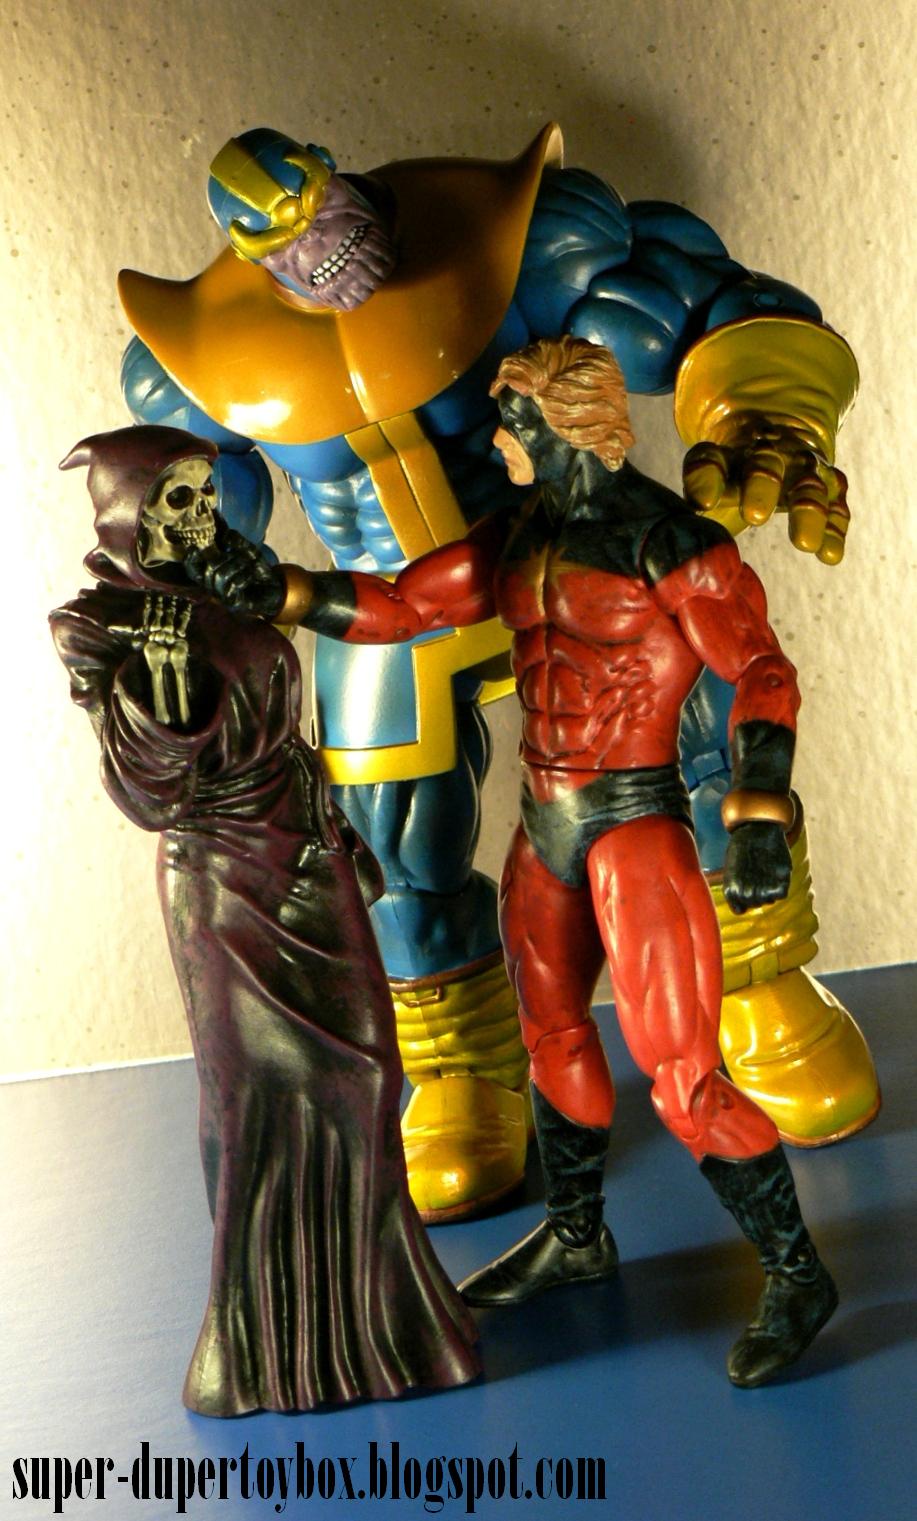 SuperDuperToyBox Marvel Select Thanos